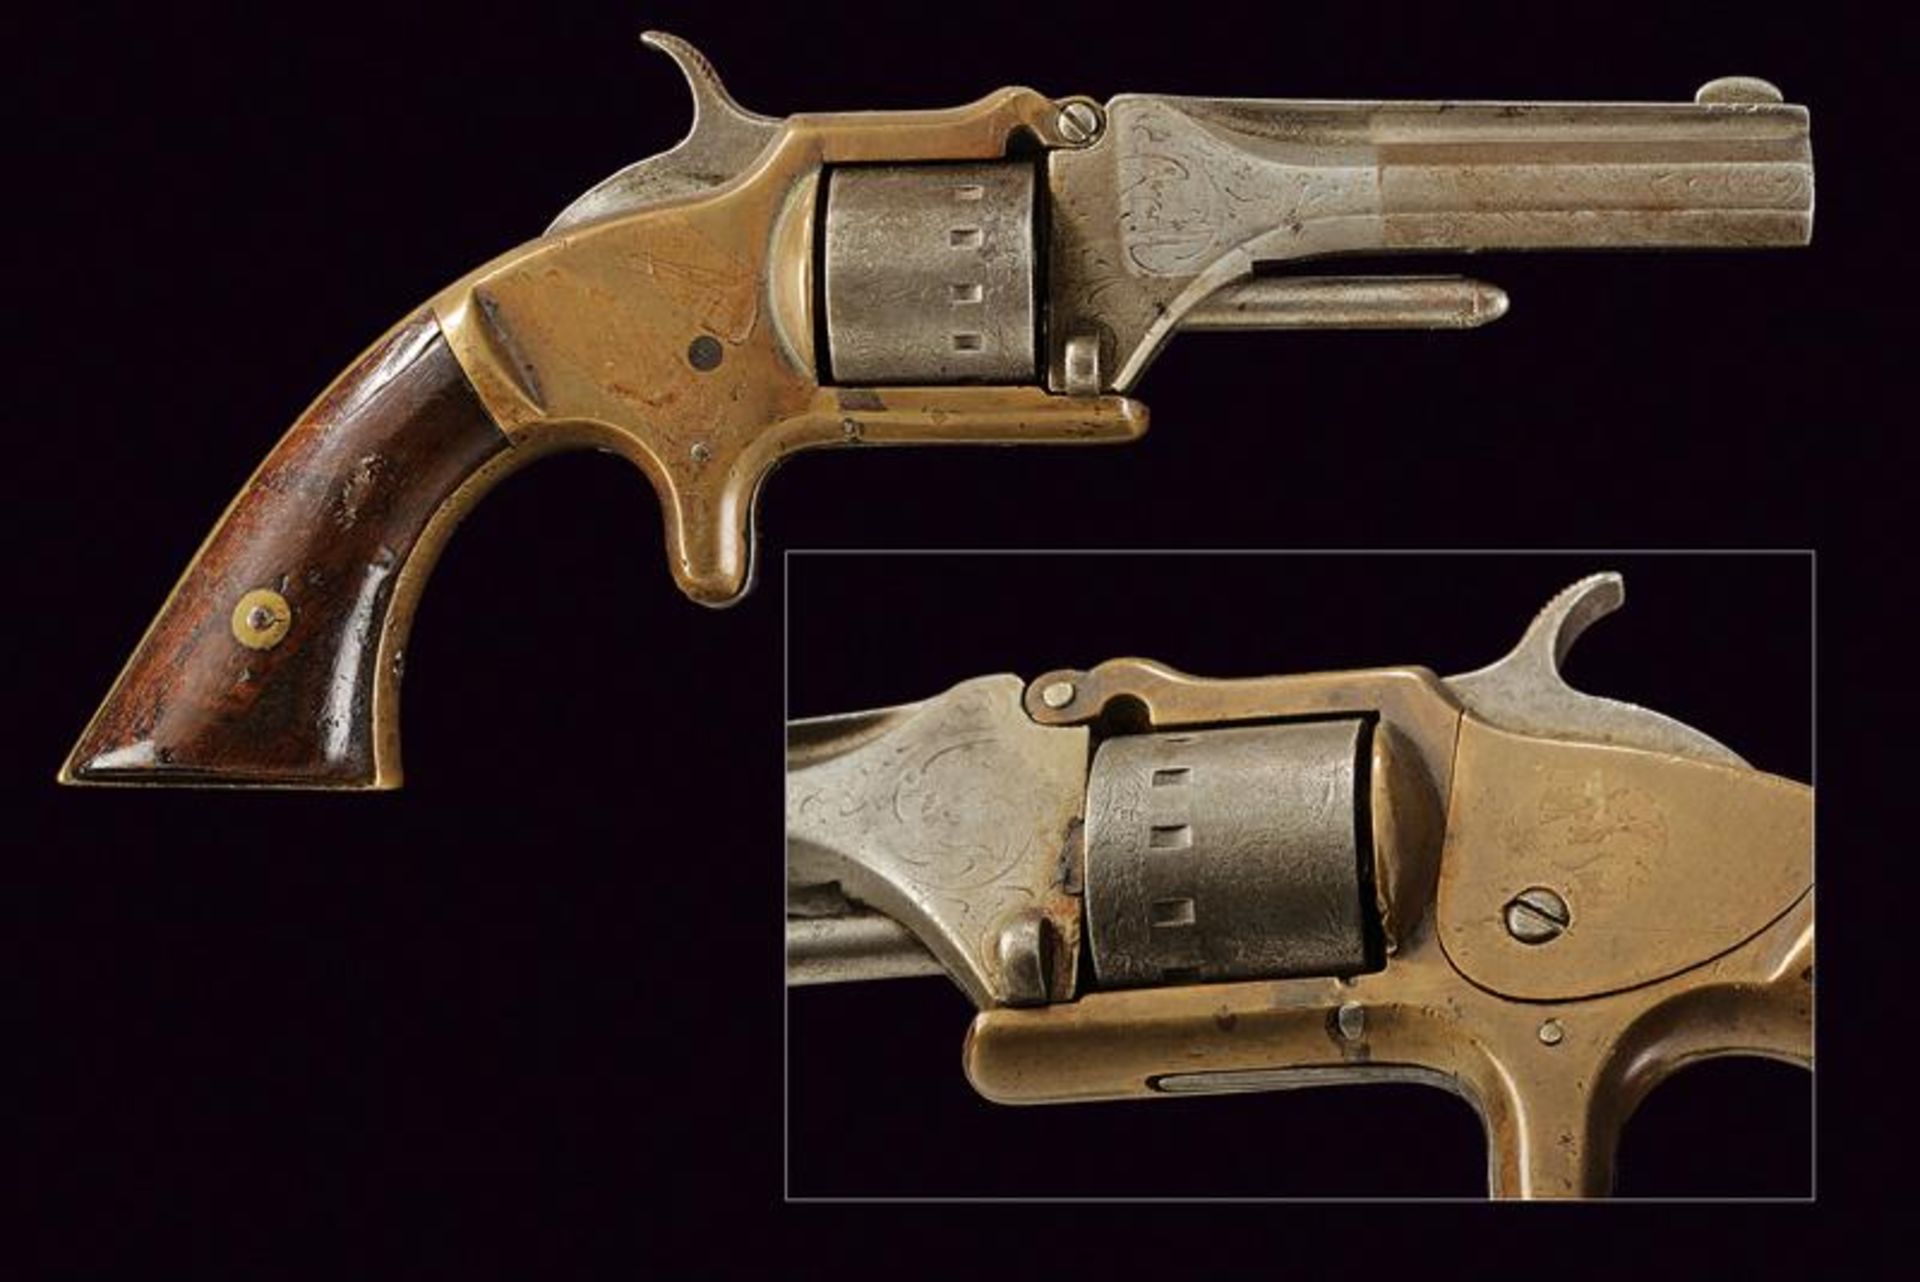 A Manhattan 22 Caliber Pocket Revolver, Second Model